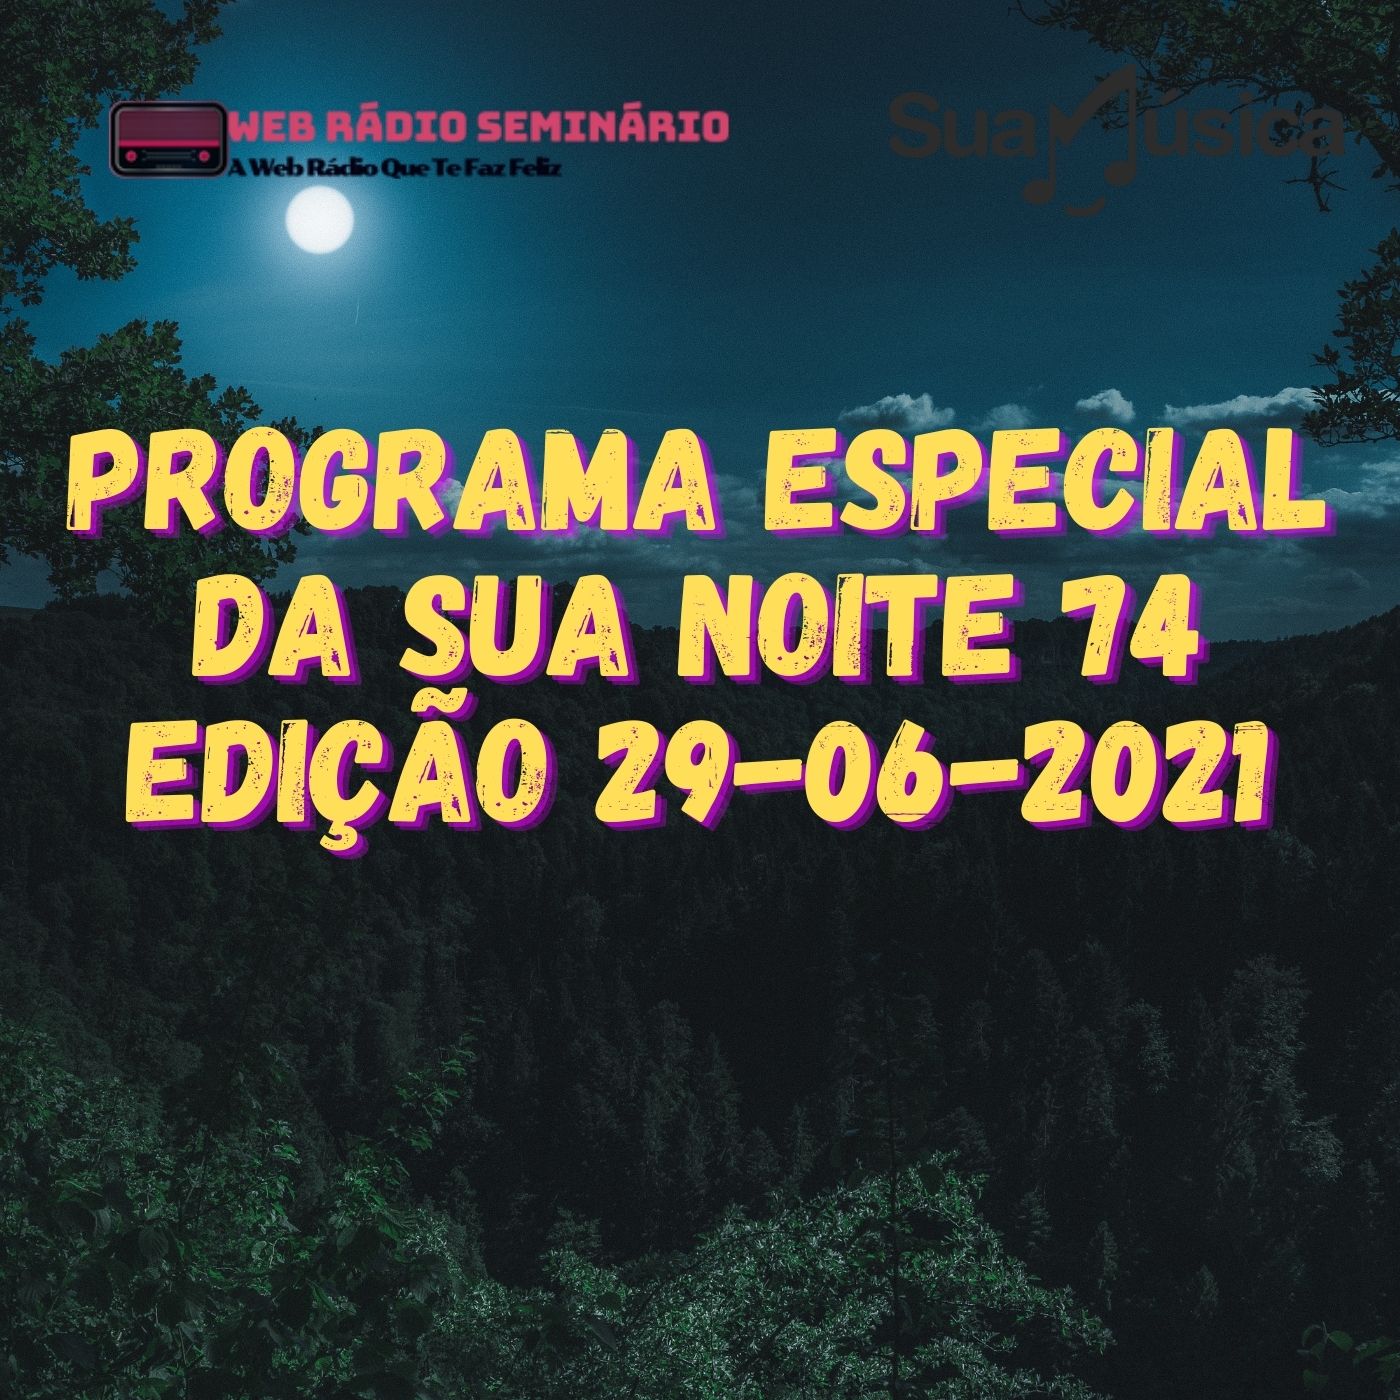 PROGRAMA ESPECIAL DA SUA NOITE-74 EDIÇAO 29-06-2021